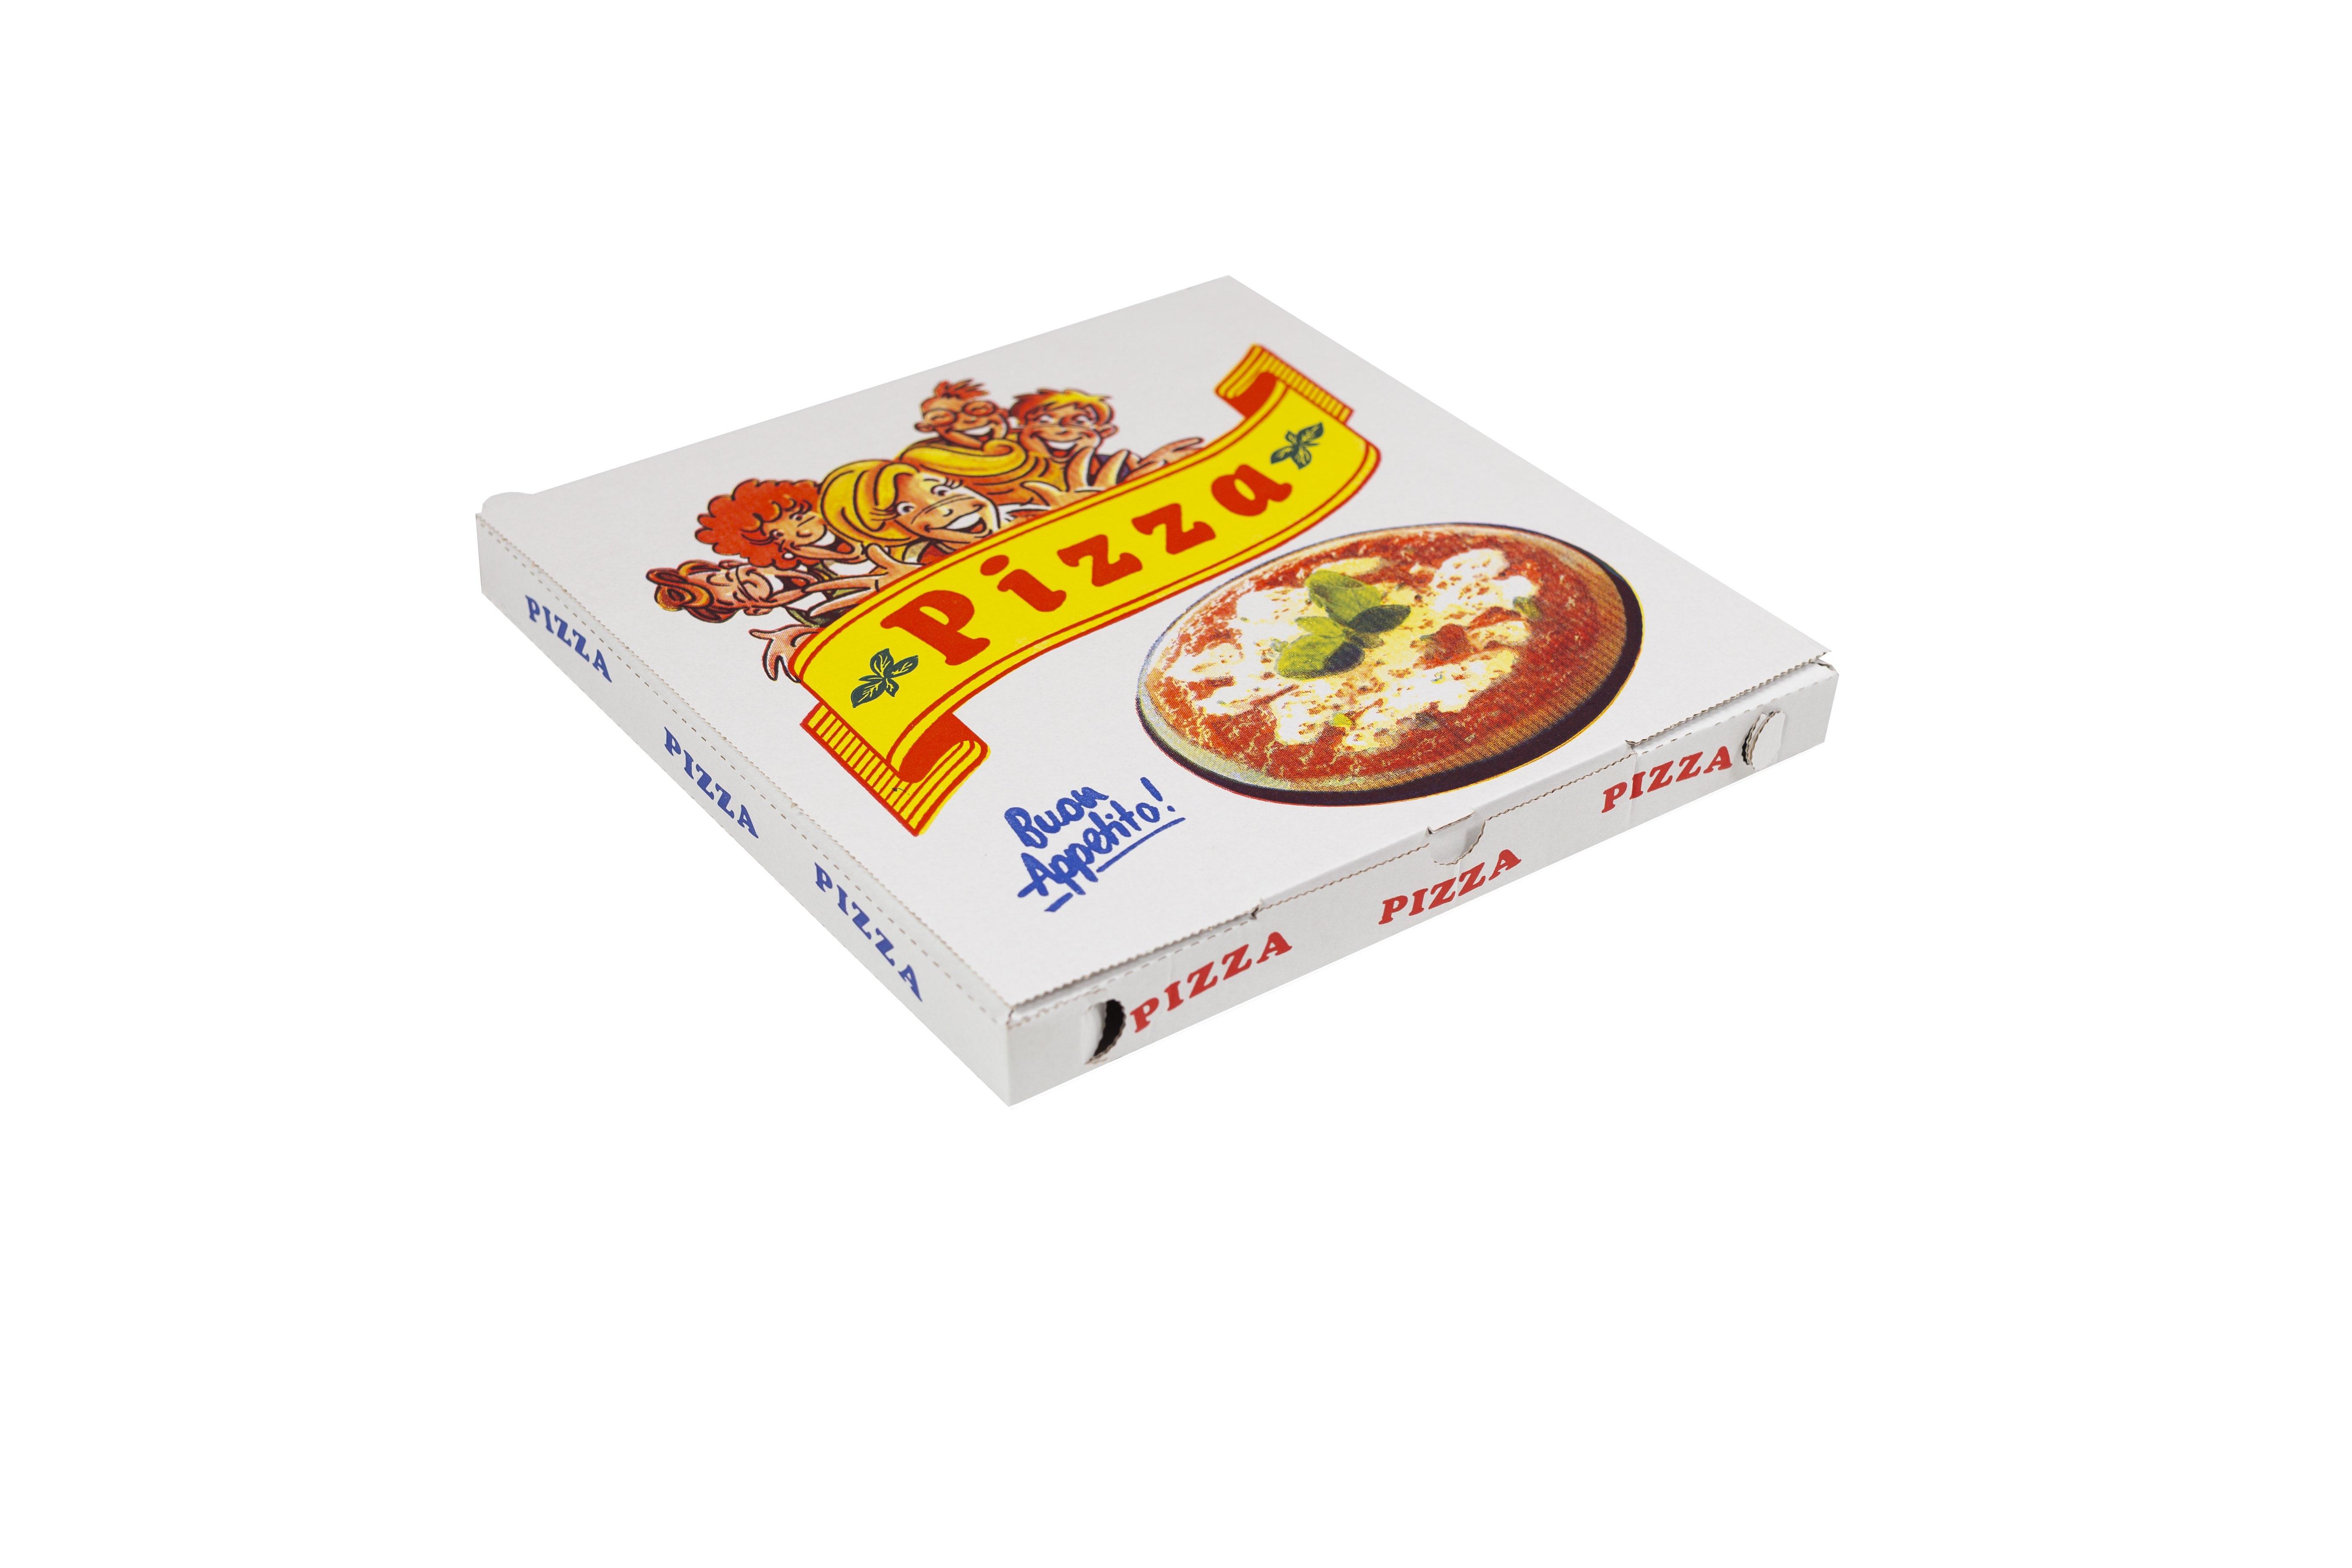 SCATOLE PER PIZZA - Contenitori per alimenti - Vendita all